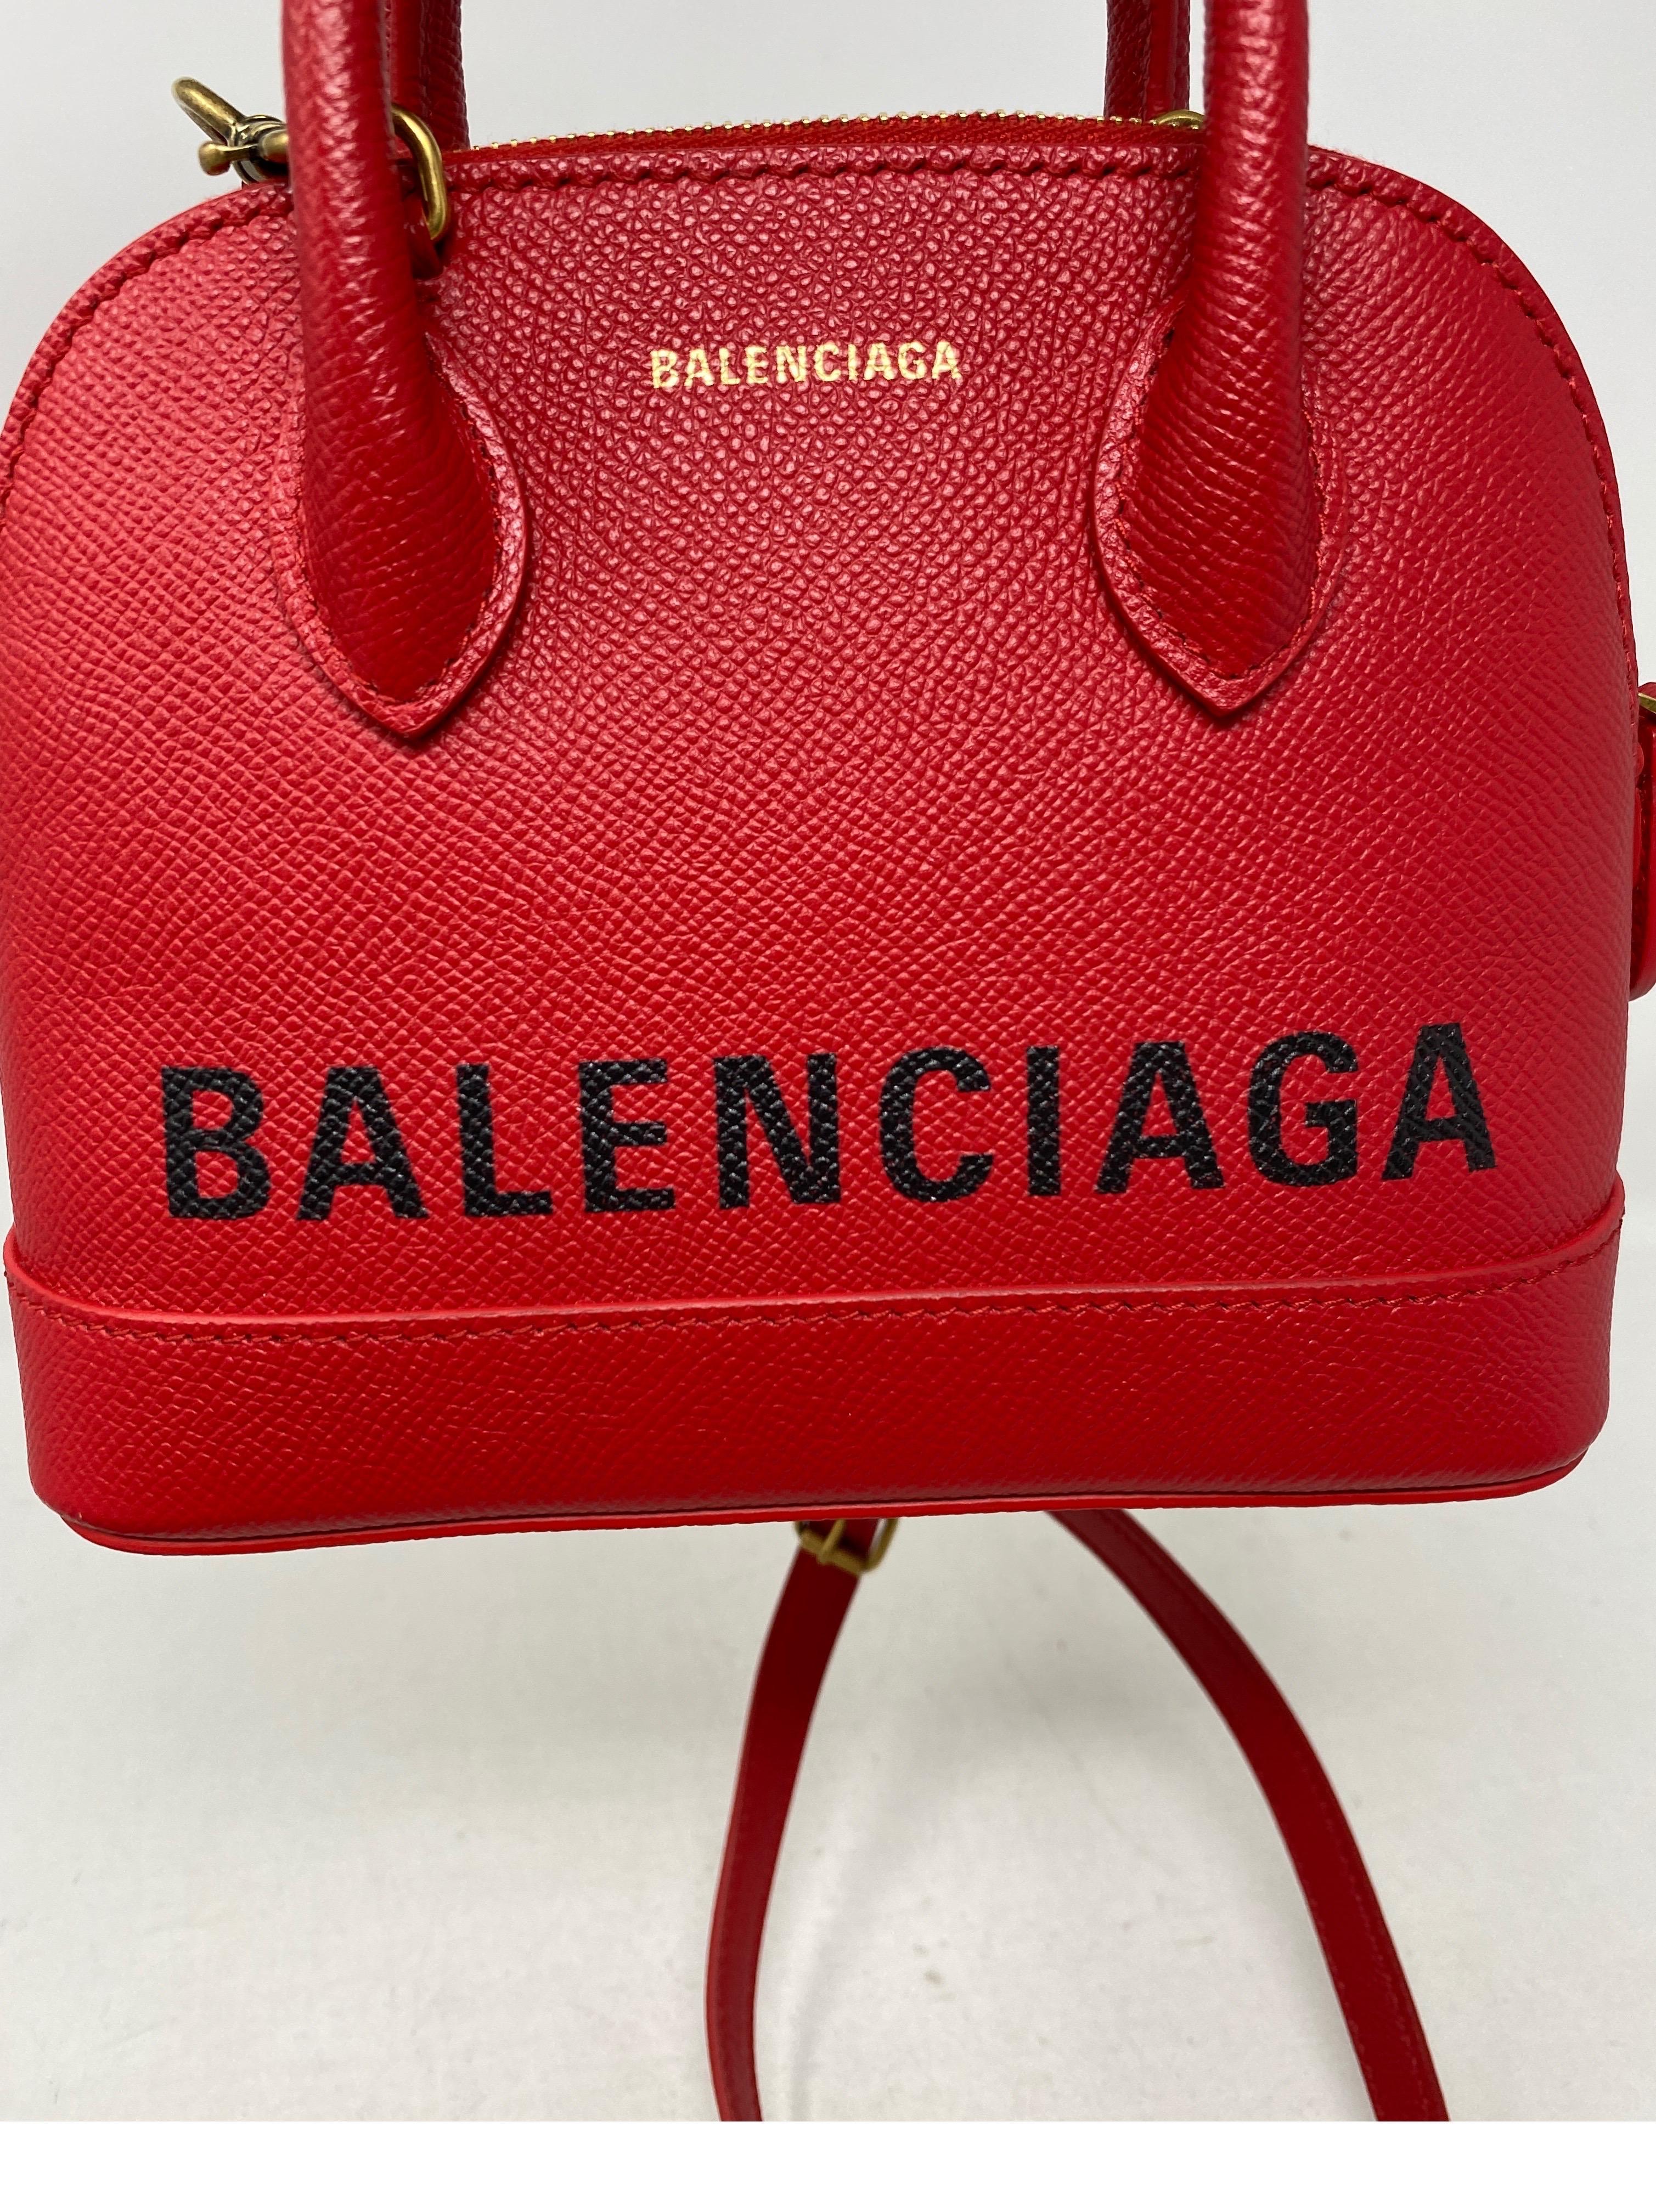 Balenciaga Red Leather Mini Bag 13